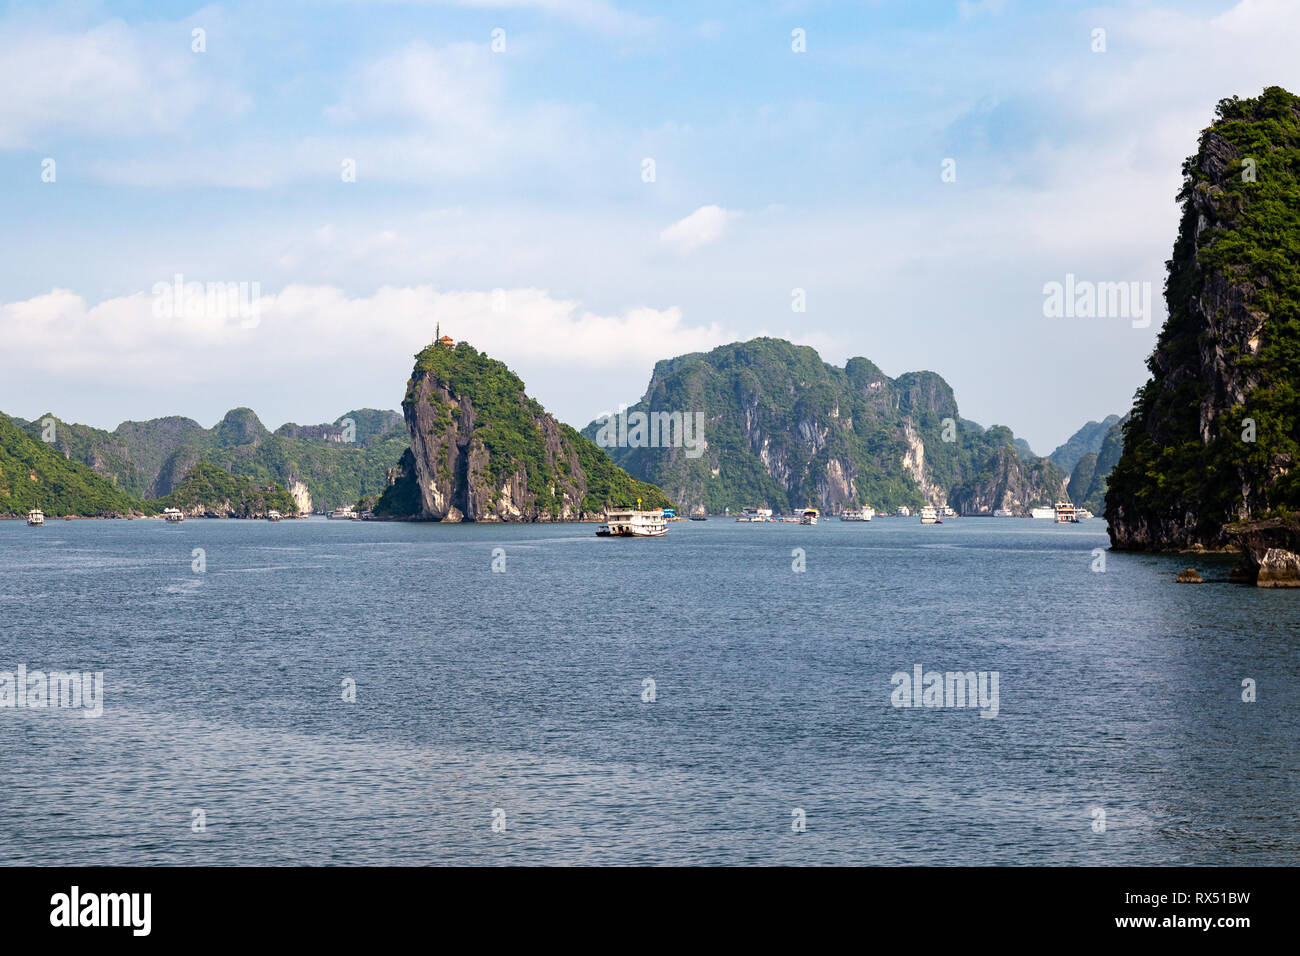 Bateaux de croisière voile parmi les formations karstiques de la Baie d'Halong, Vietnam, dans le golfe du Tonkin. La baie d'Halong est un site classé au patrimoine mondial et le plus Banque D'Images